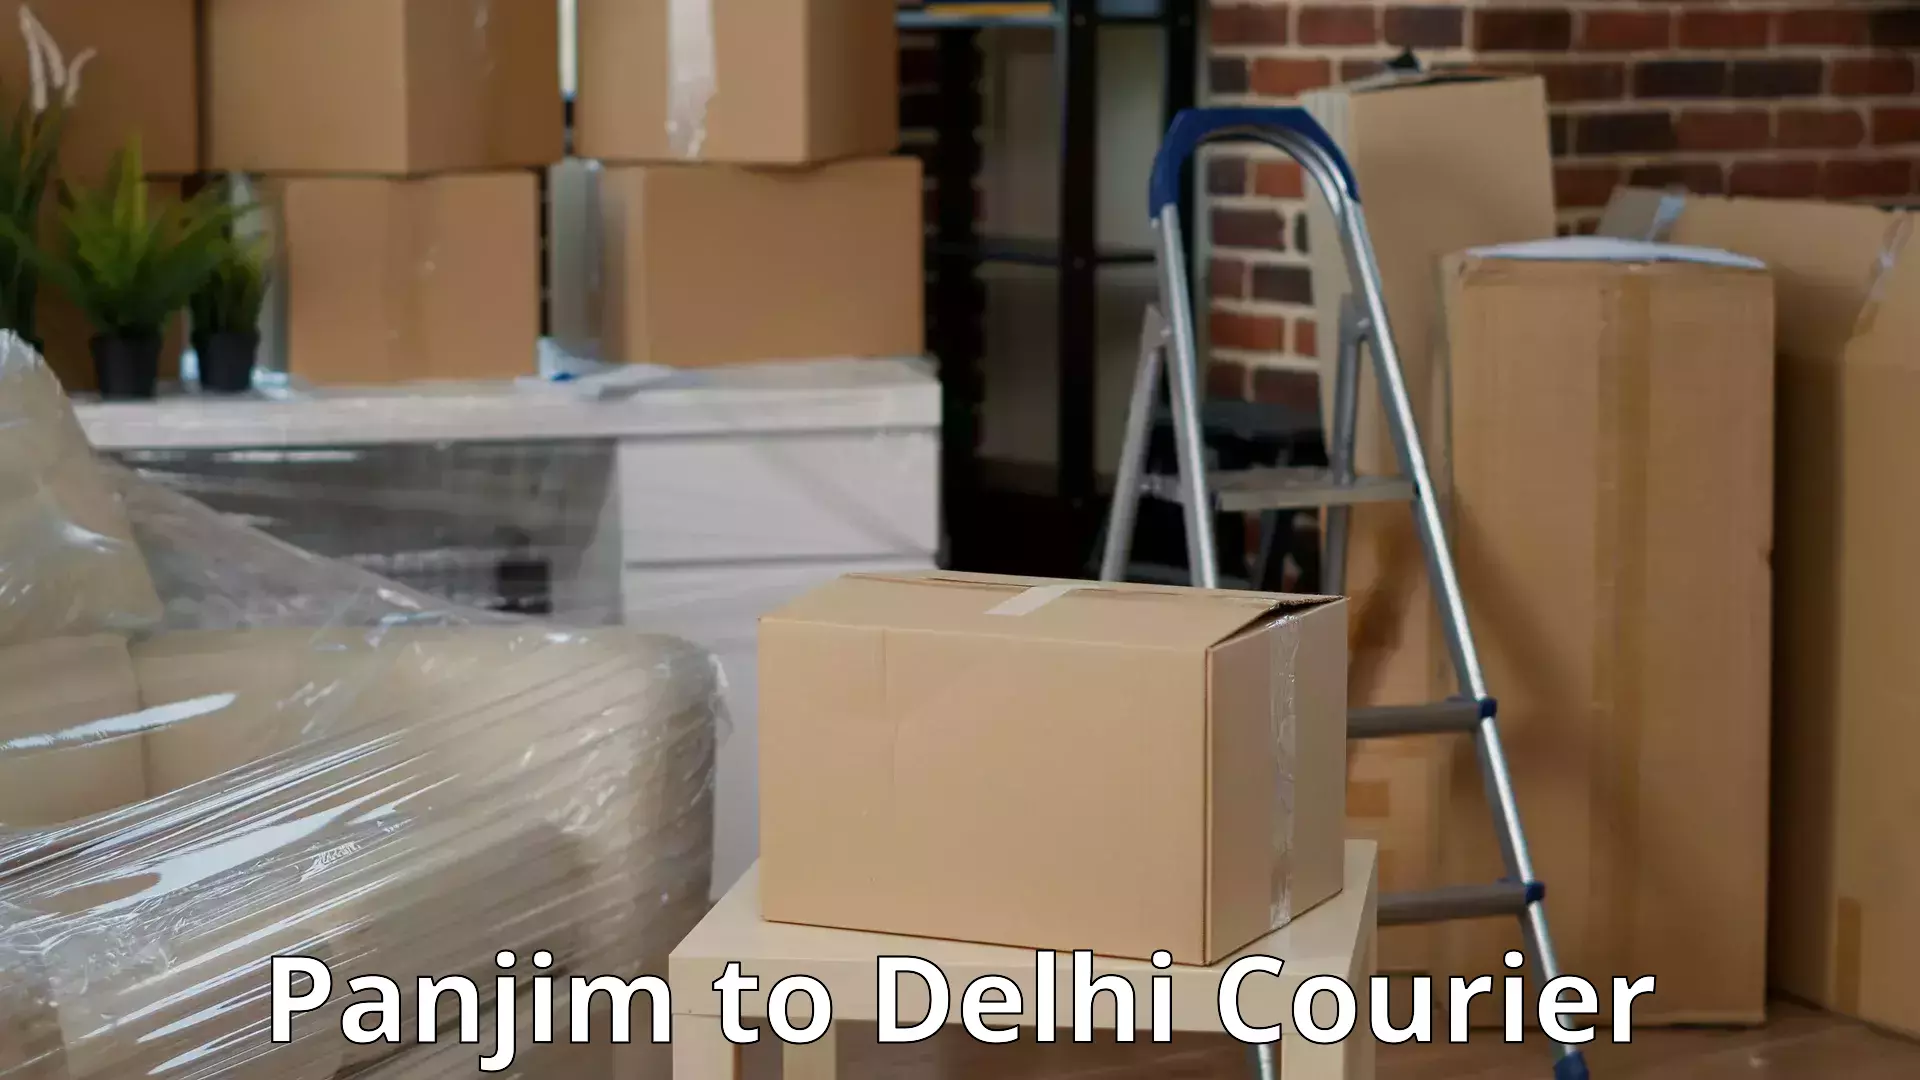 Budget-friendly moving services Panjim to Jamia Millia Islamia New Delhi